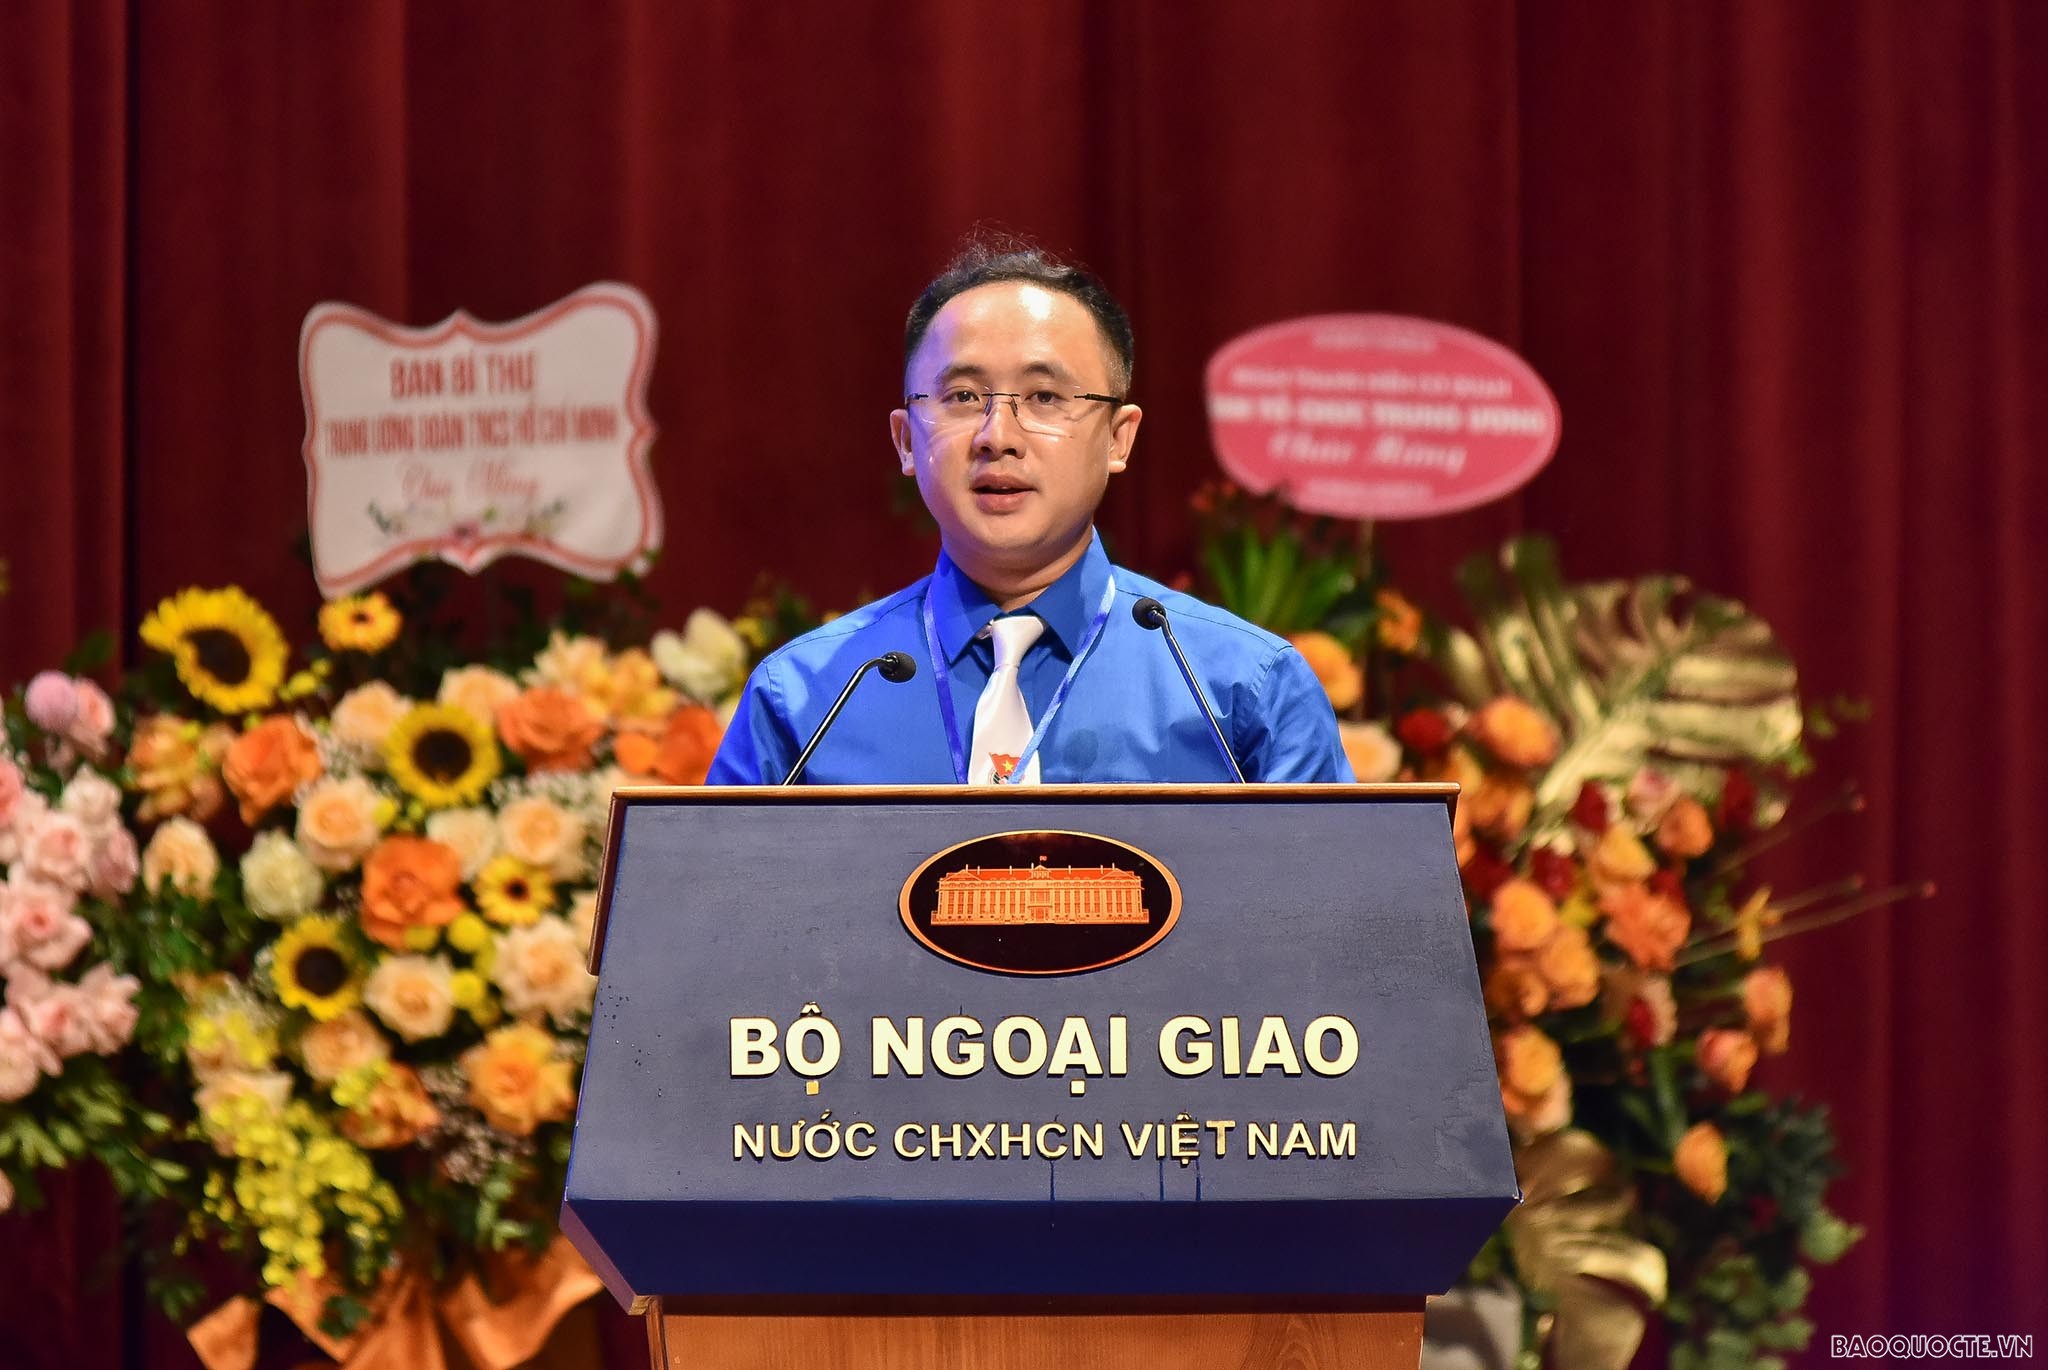 Tân Bí thư Ban chấp hành Đoàn Thanh niên Nguyễn Đồng Anh phát biểu tại Đại hội.